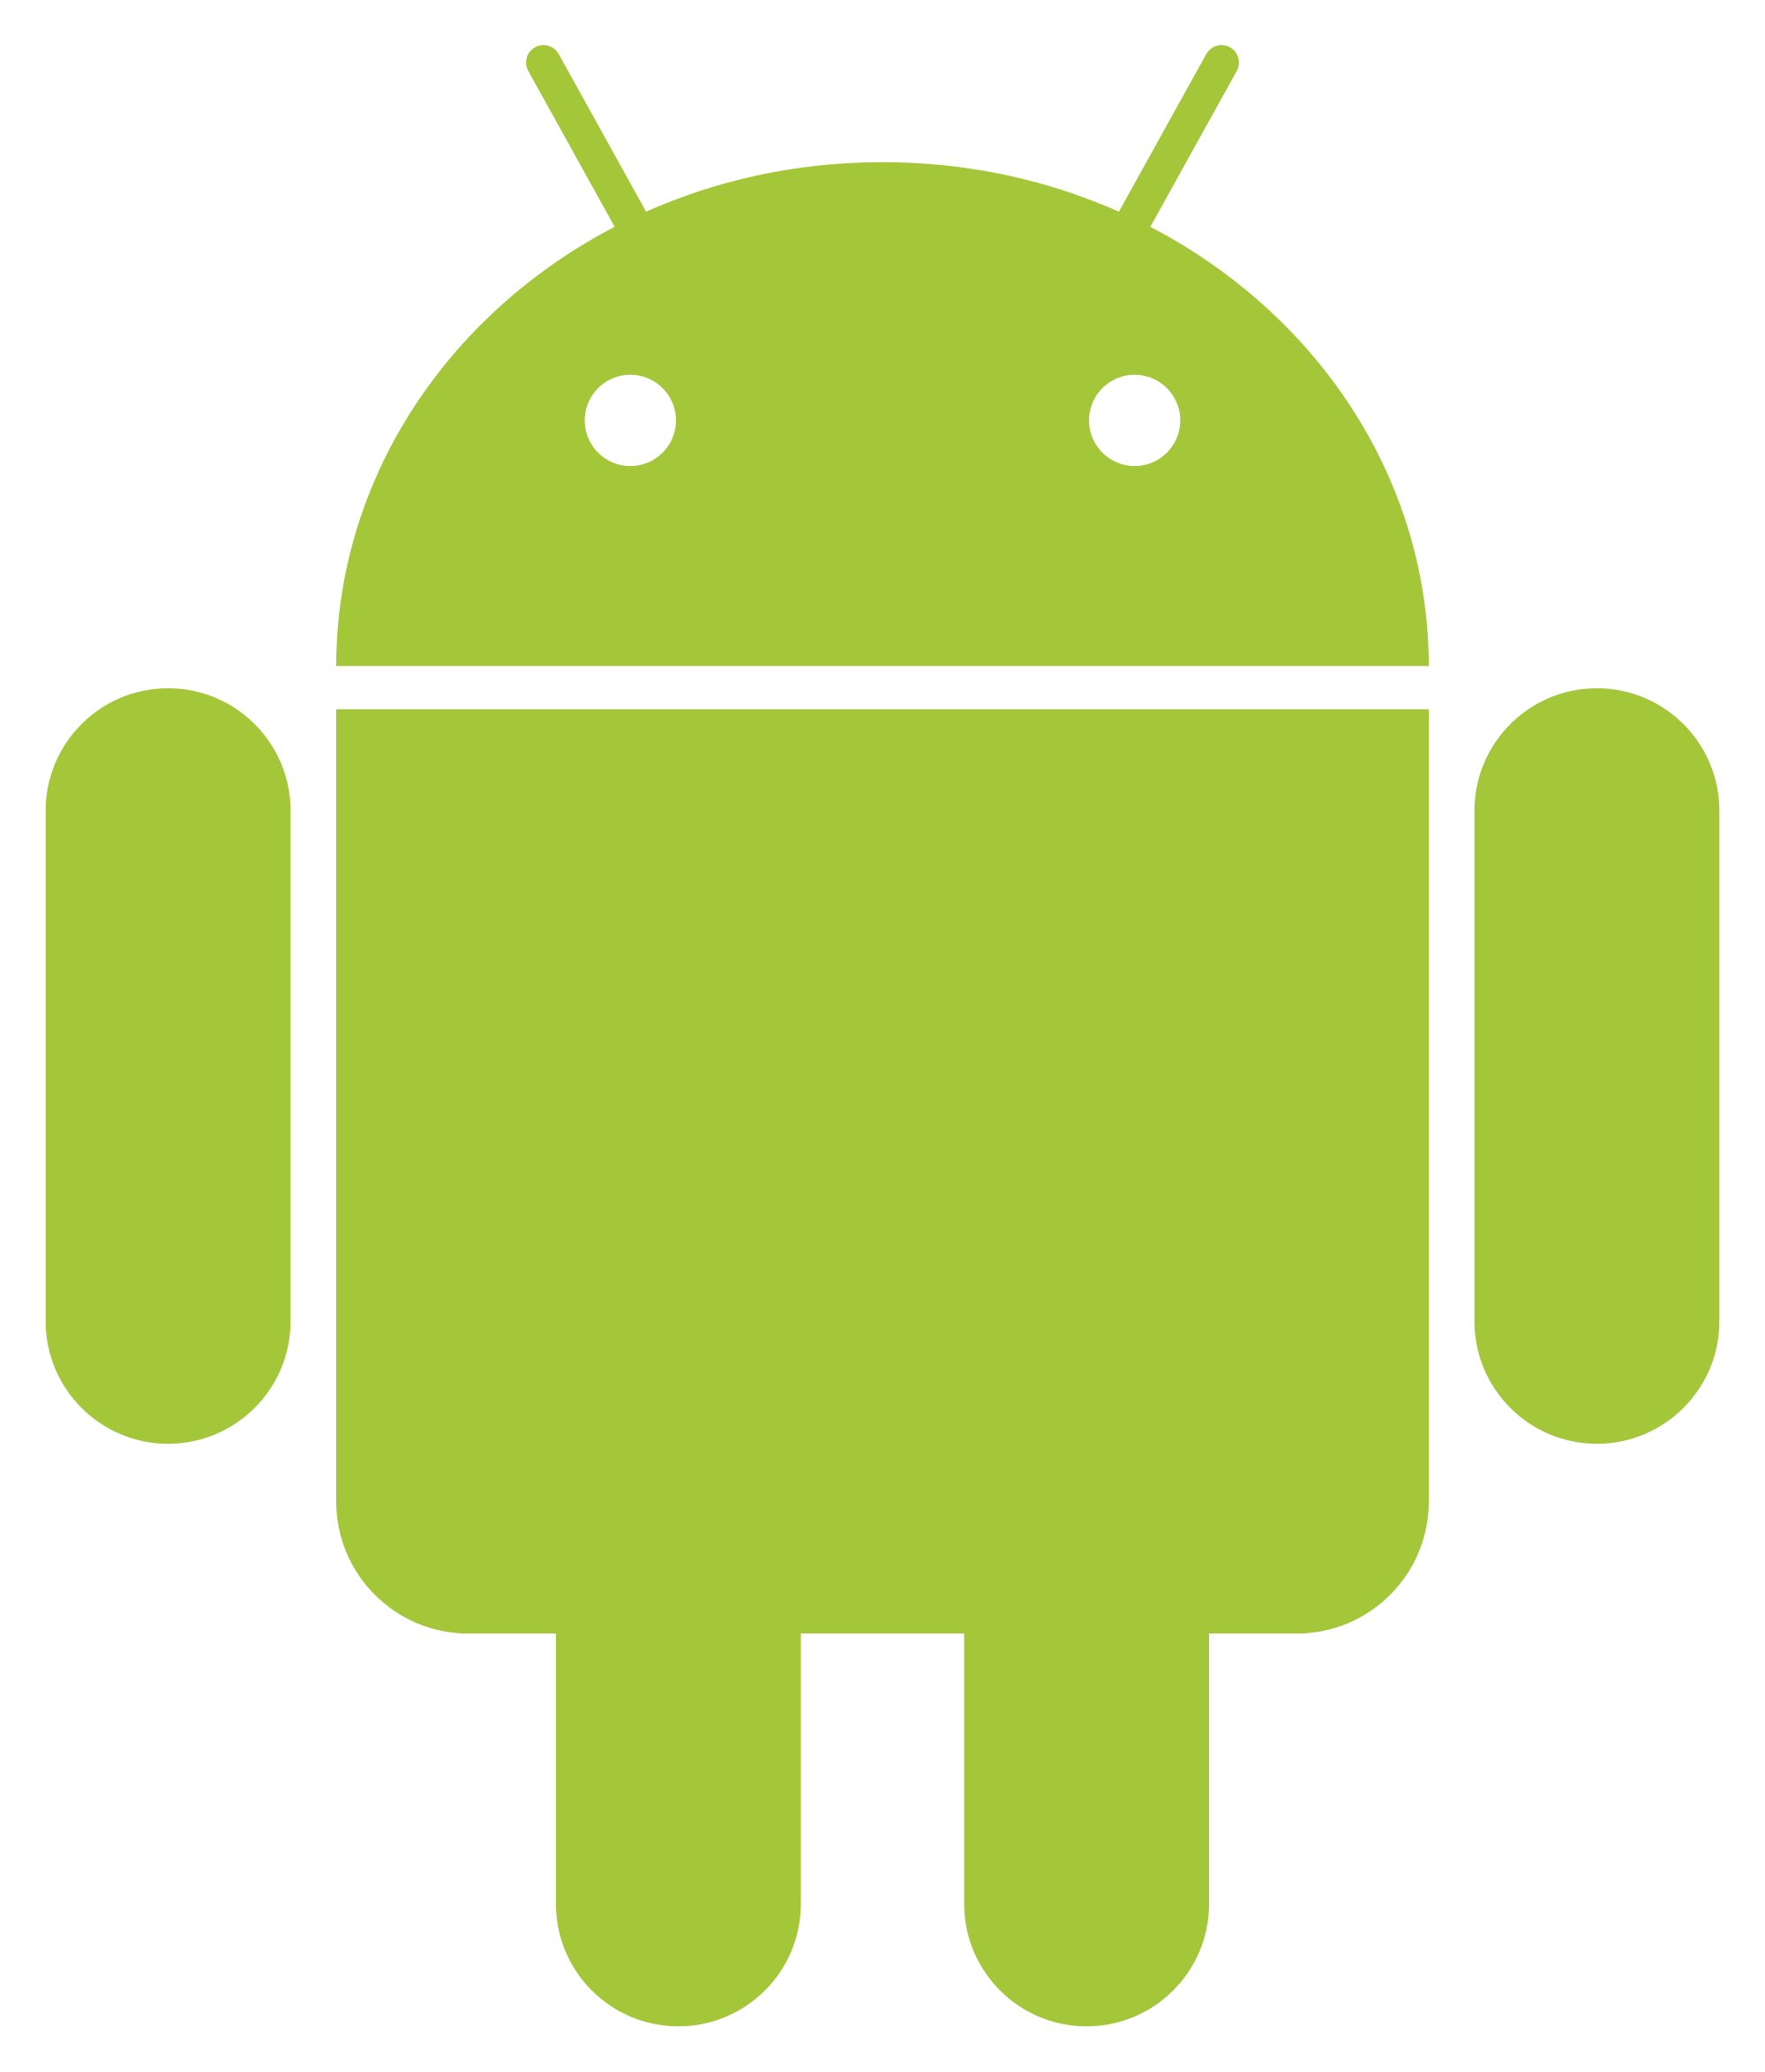 Как рисовать в тг на андроид. Андроид. Символ андроид. Значок Android. Логотип андроид вектор.